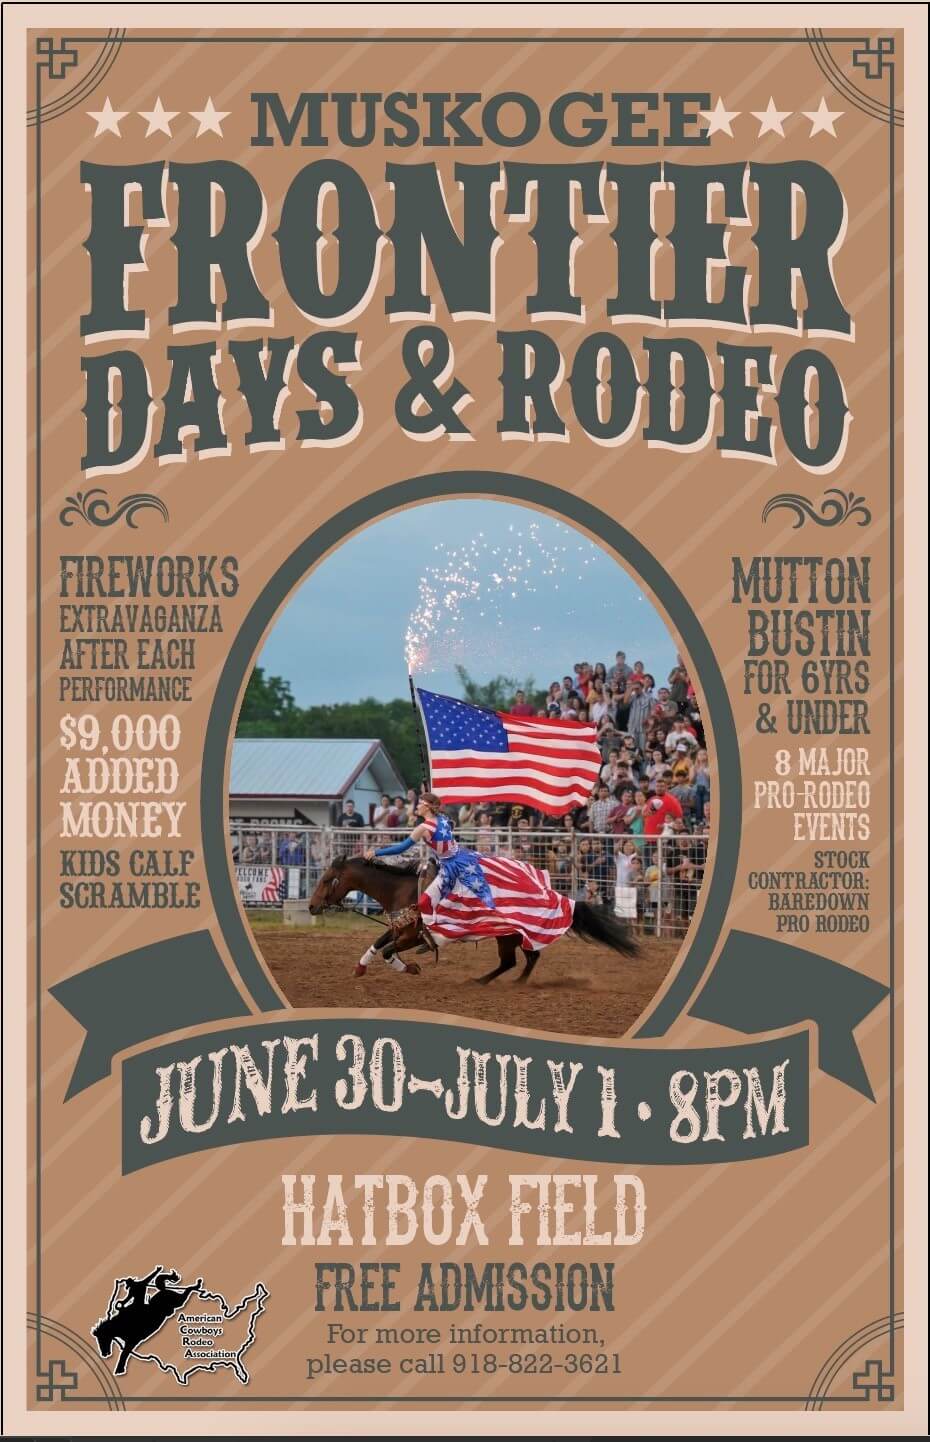 Muskogee Frontier Days & Rodeo Visit Muskogee